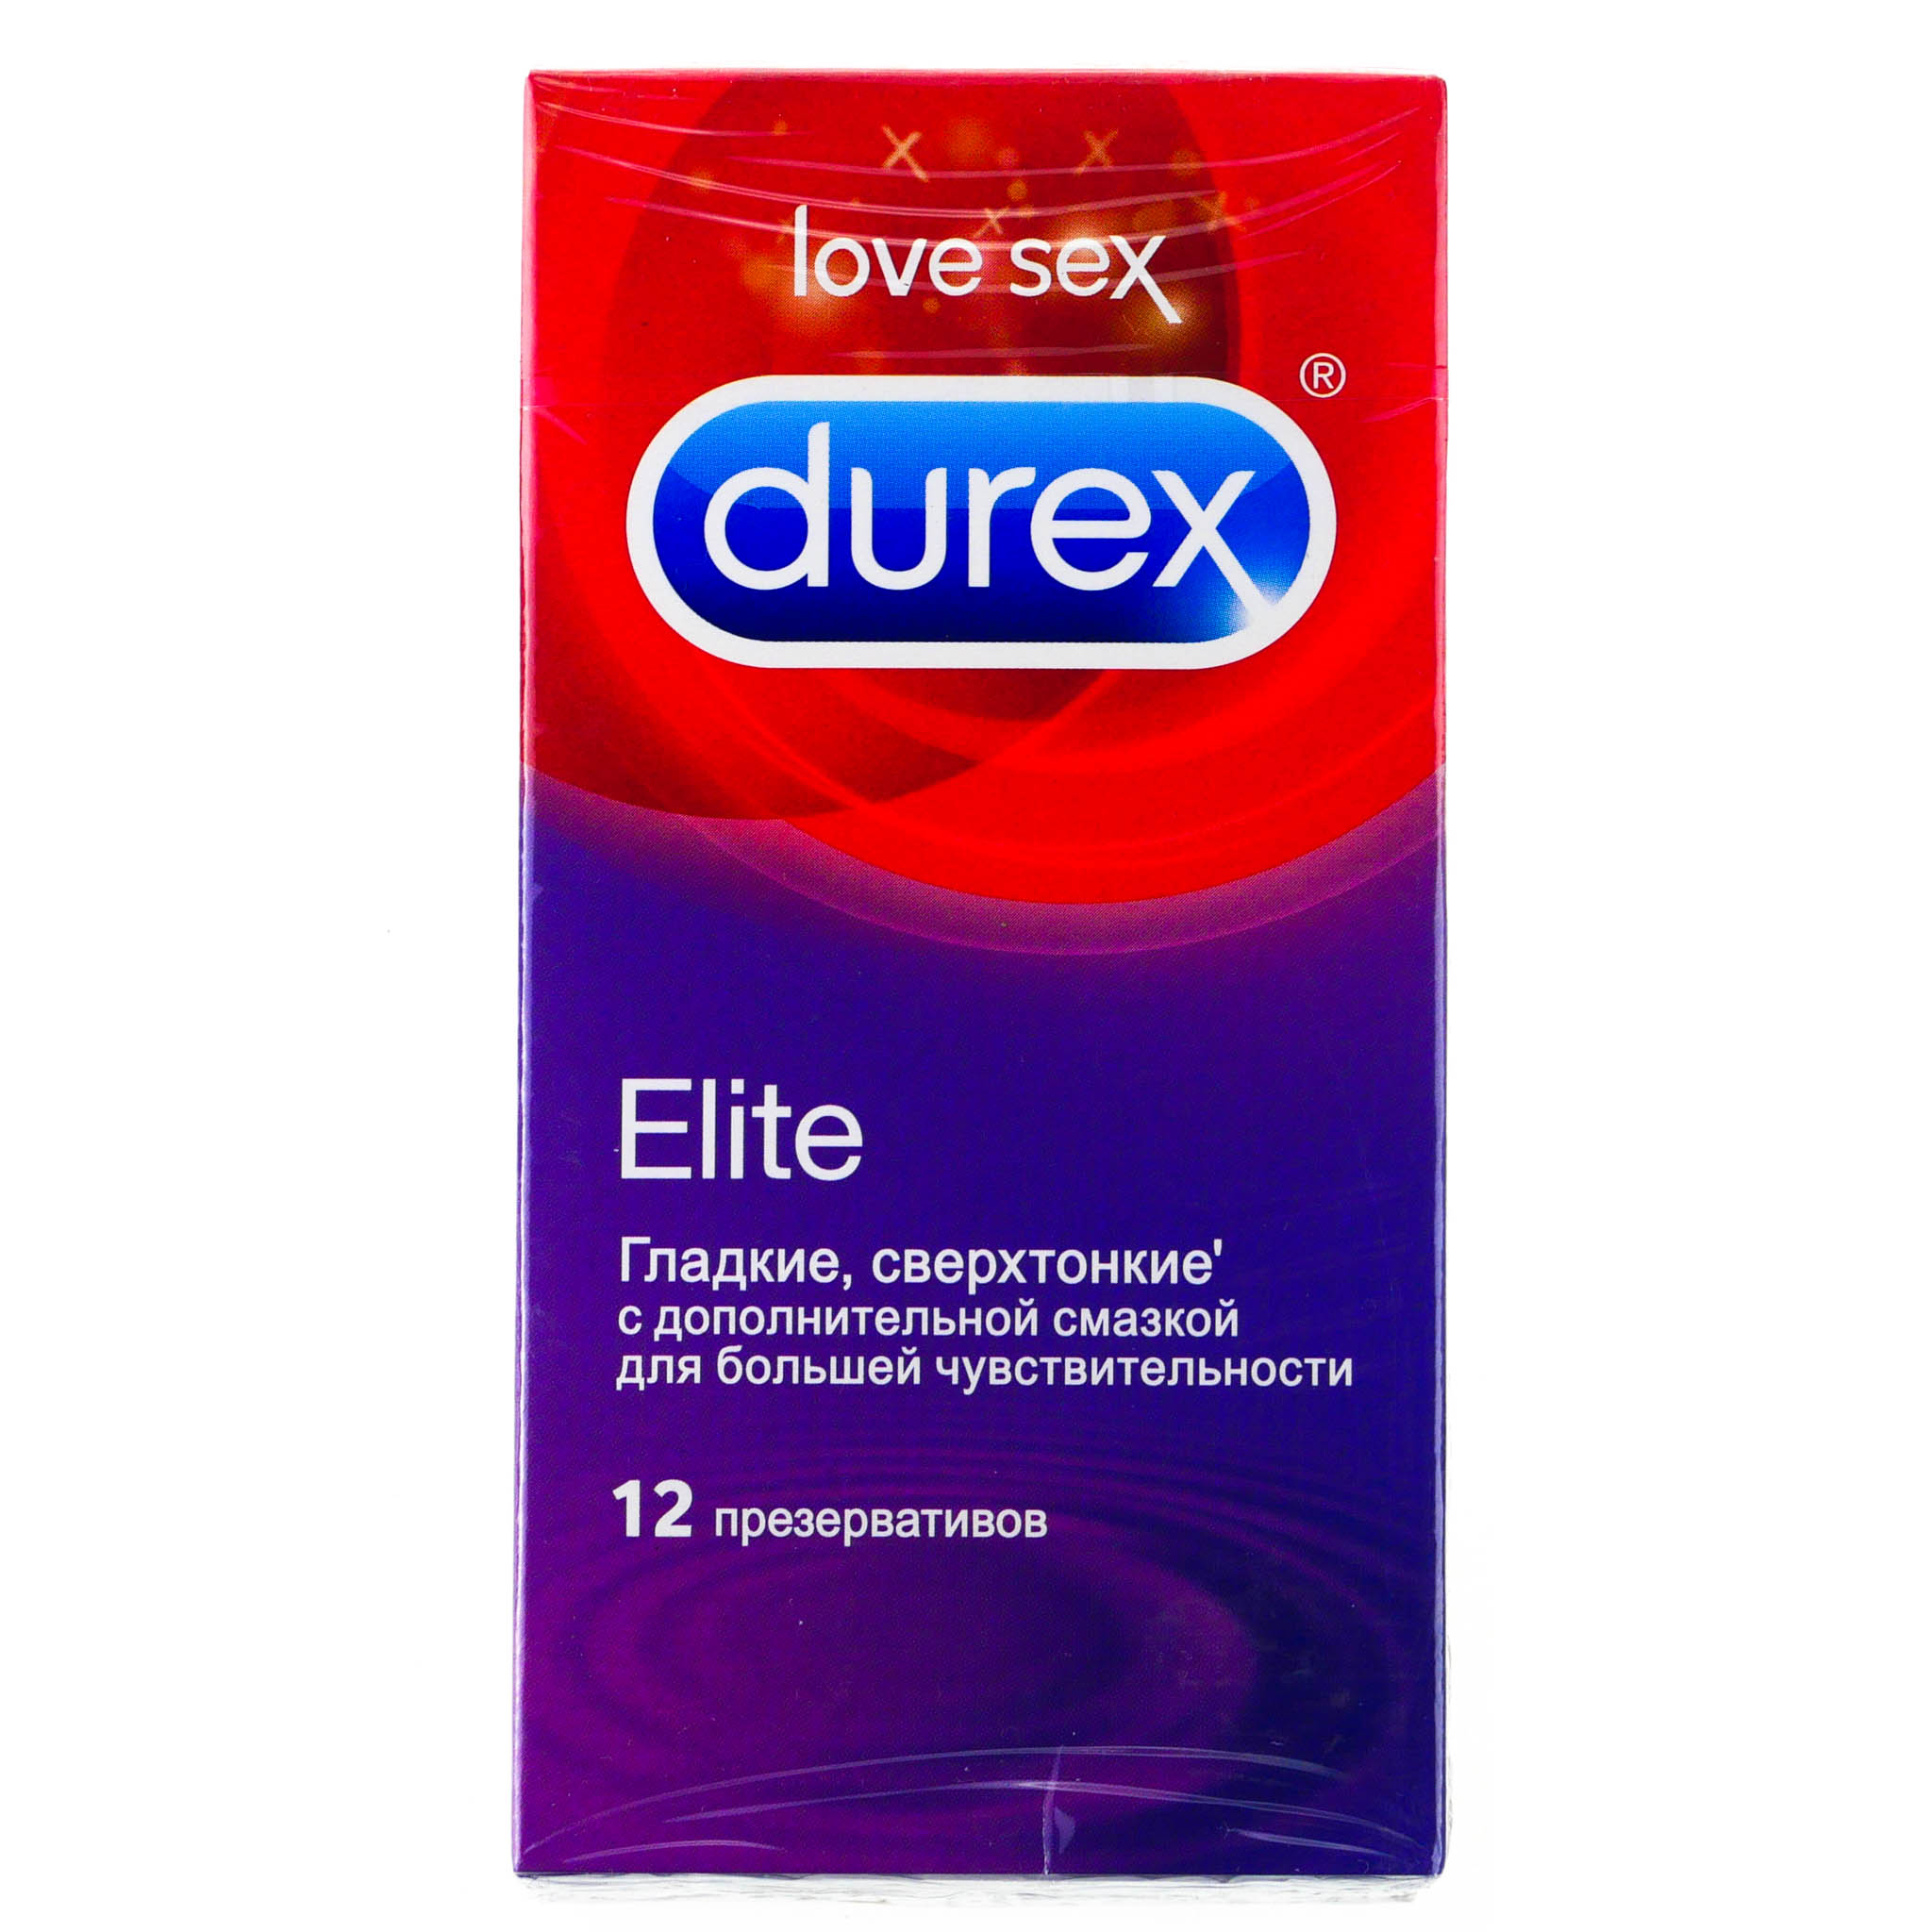 Дюрекс презервативы из натурального латекса Инвизибл экстра луб №12